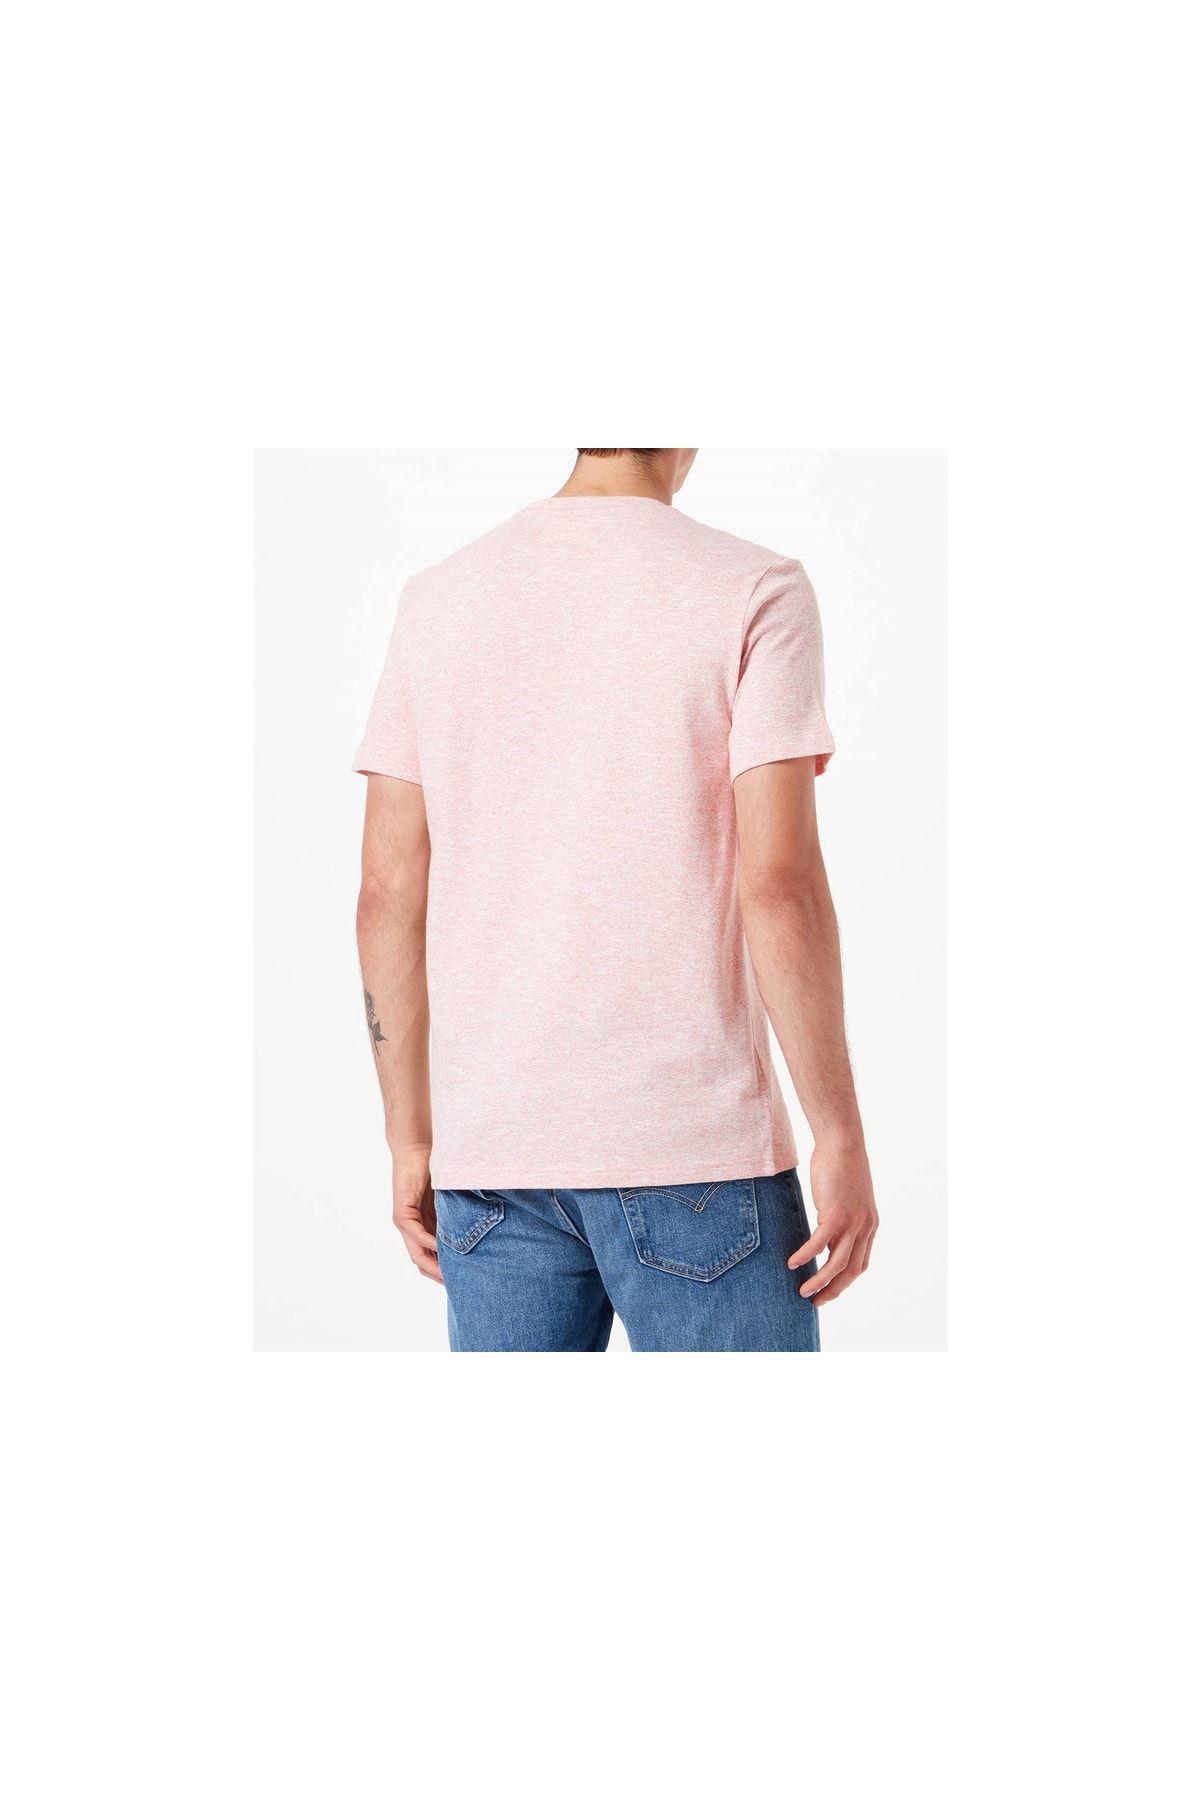 Tom Tailor - fit - - Regular Pink Trendyol Shirt